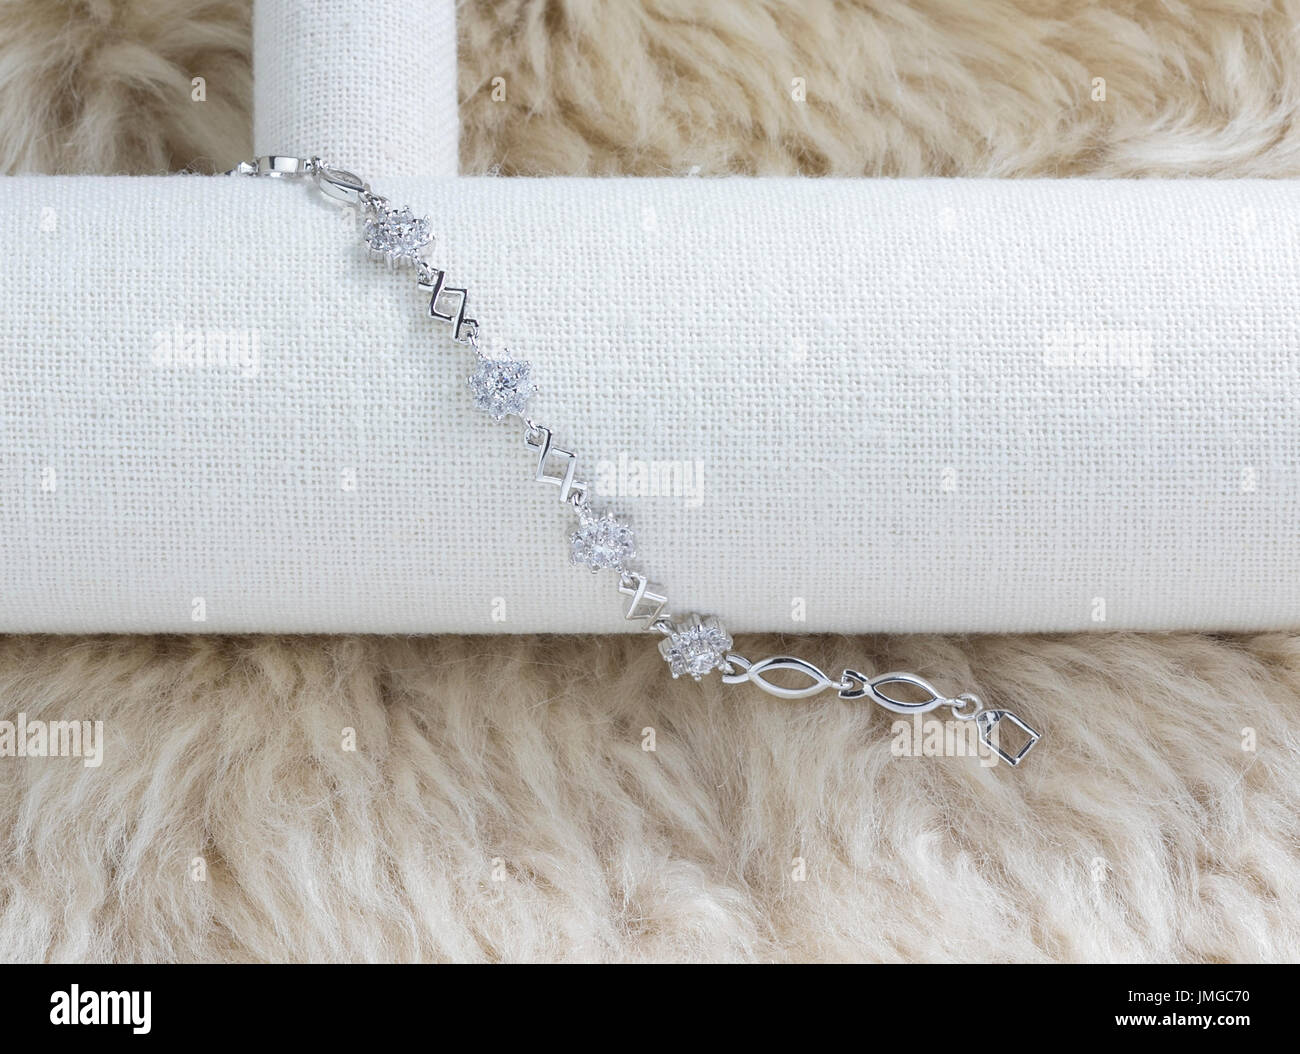 Magnifique bracelet diamant afficher sur le tapis de fourrure Banque D'Images